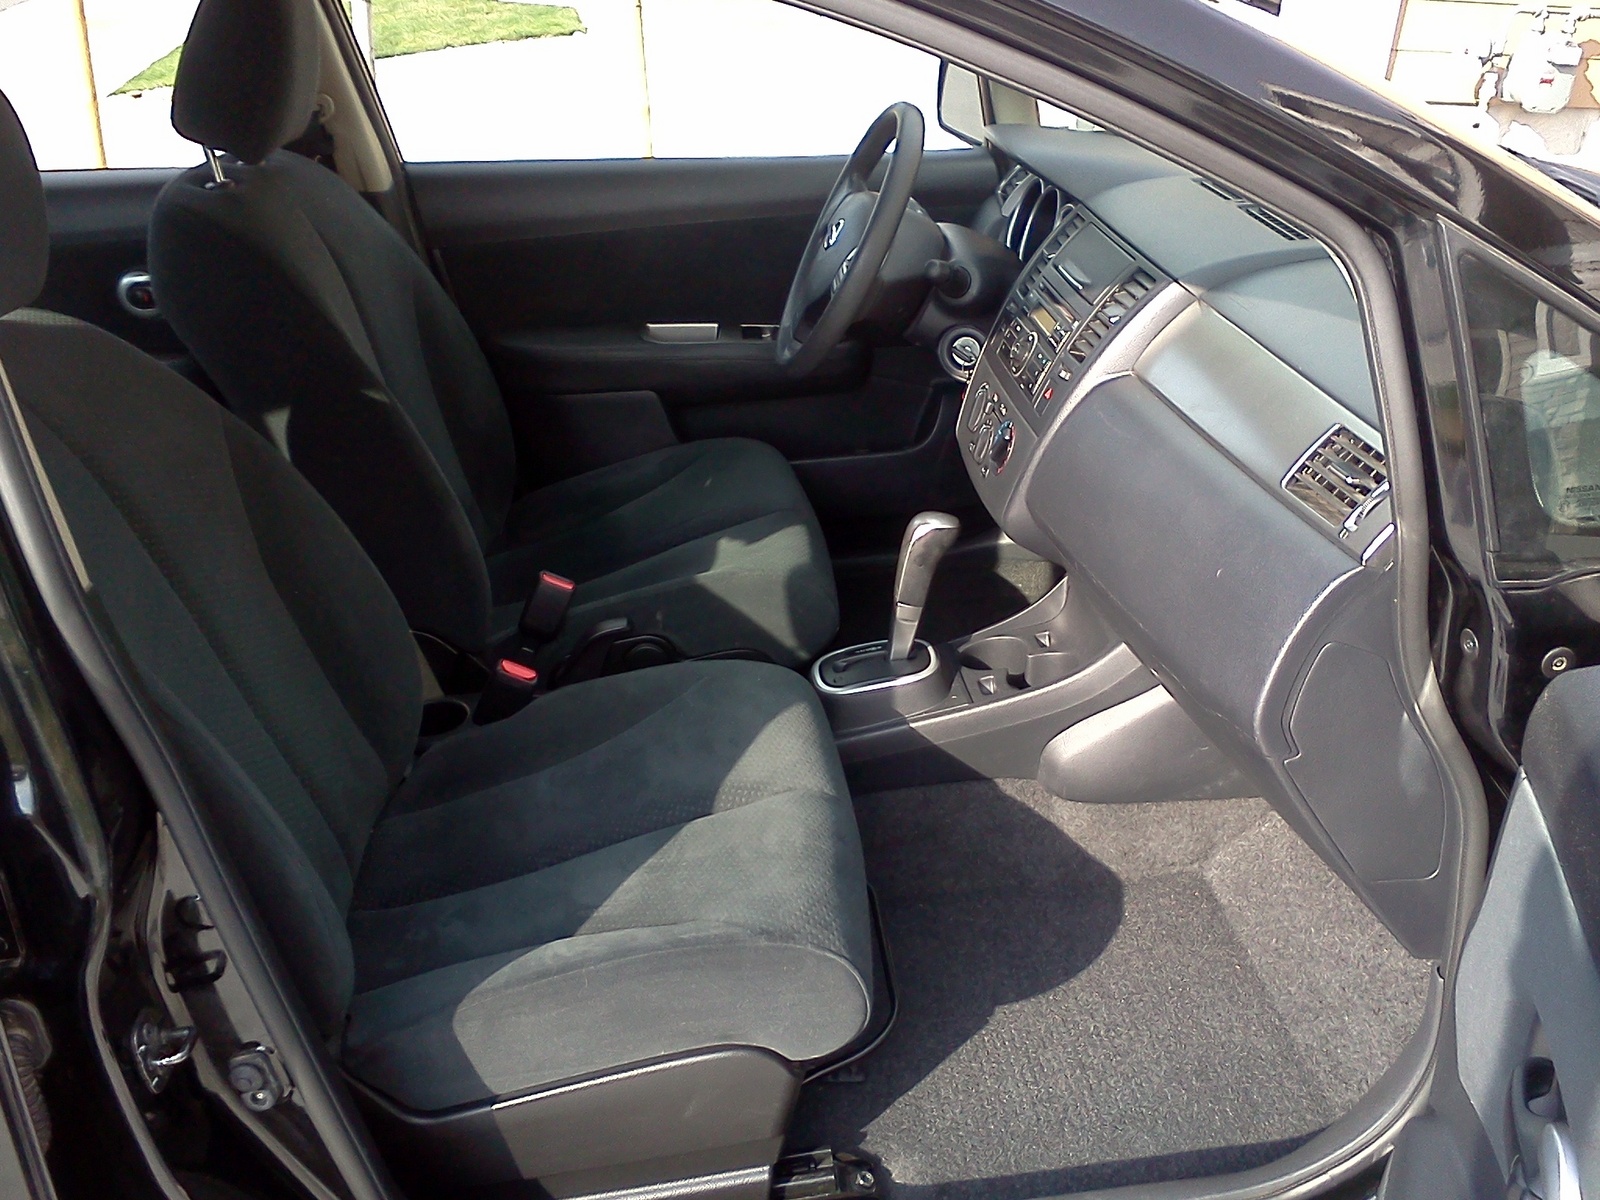 2010 Nissan versa interior pictures #6